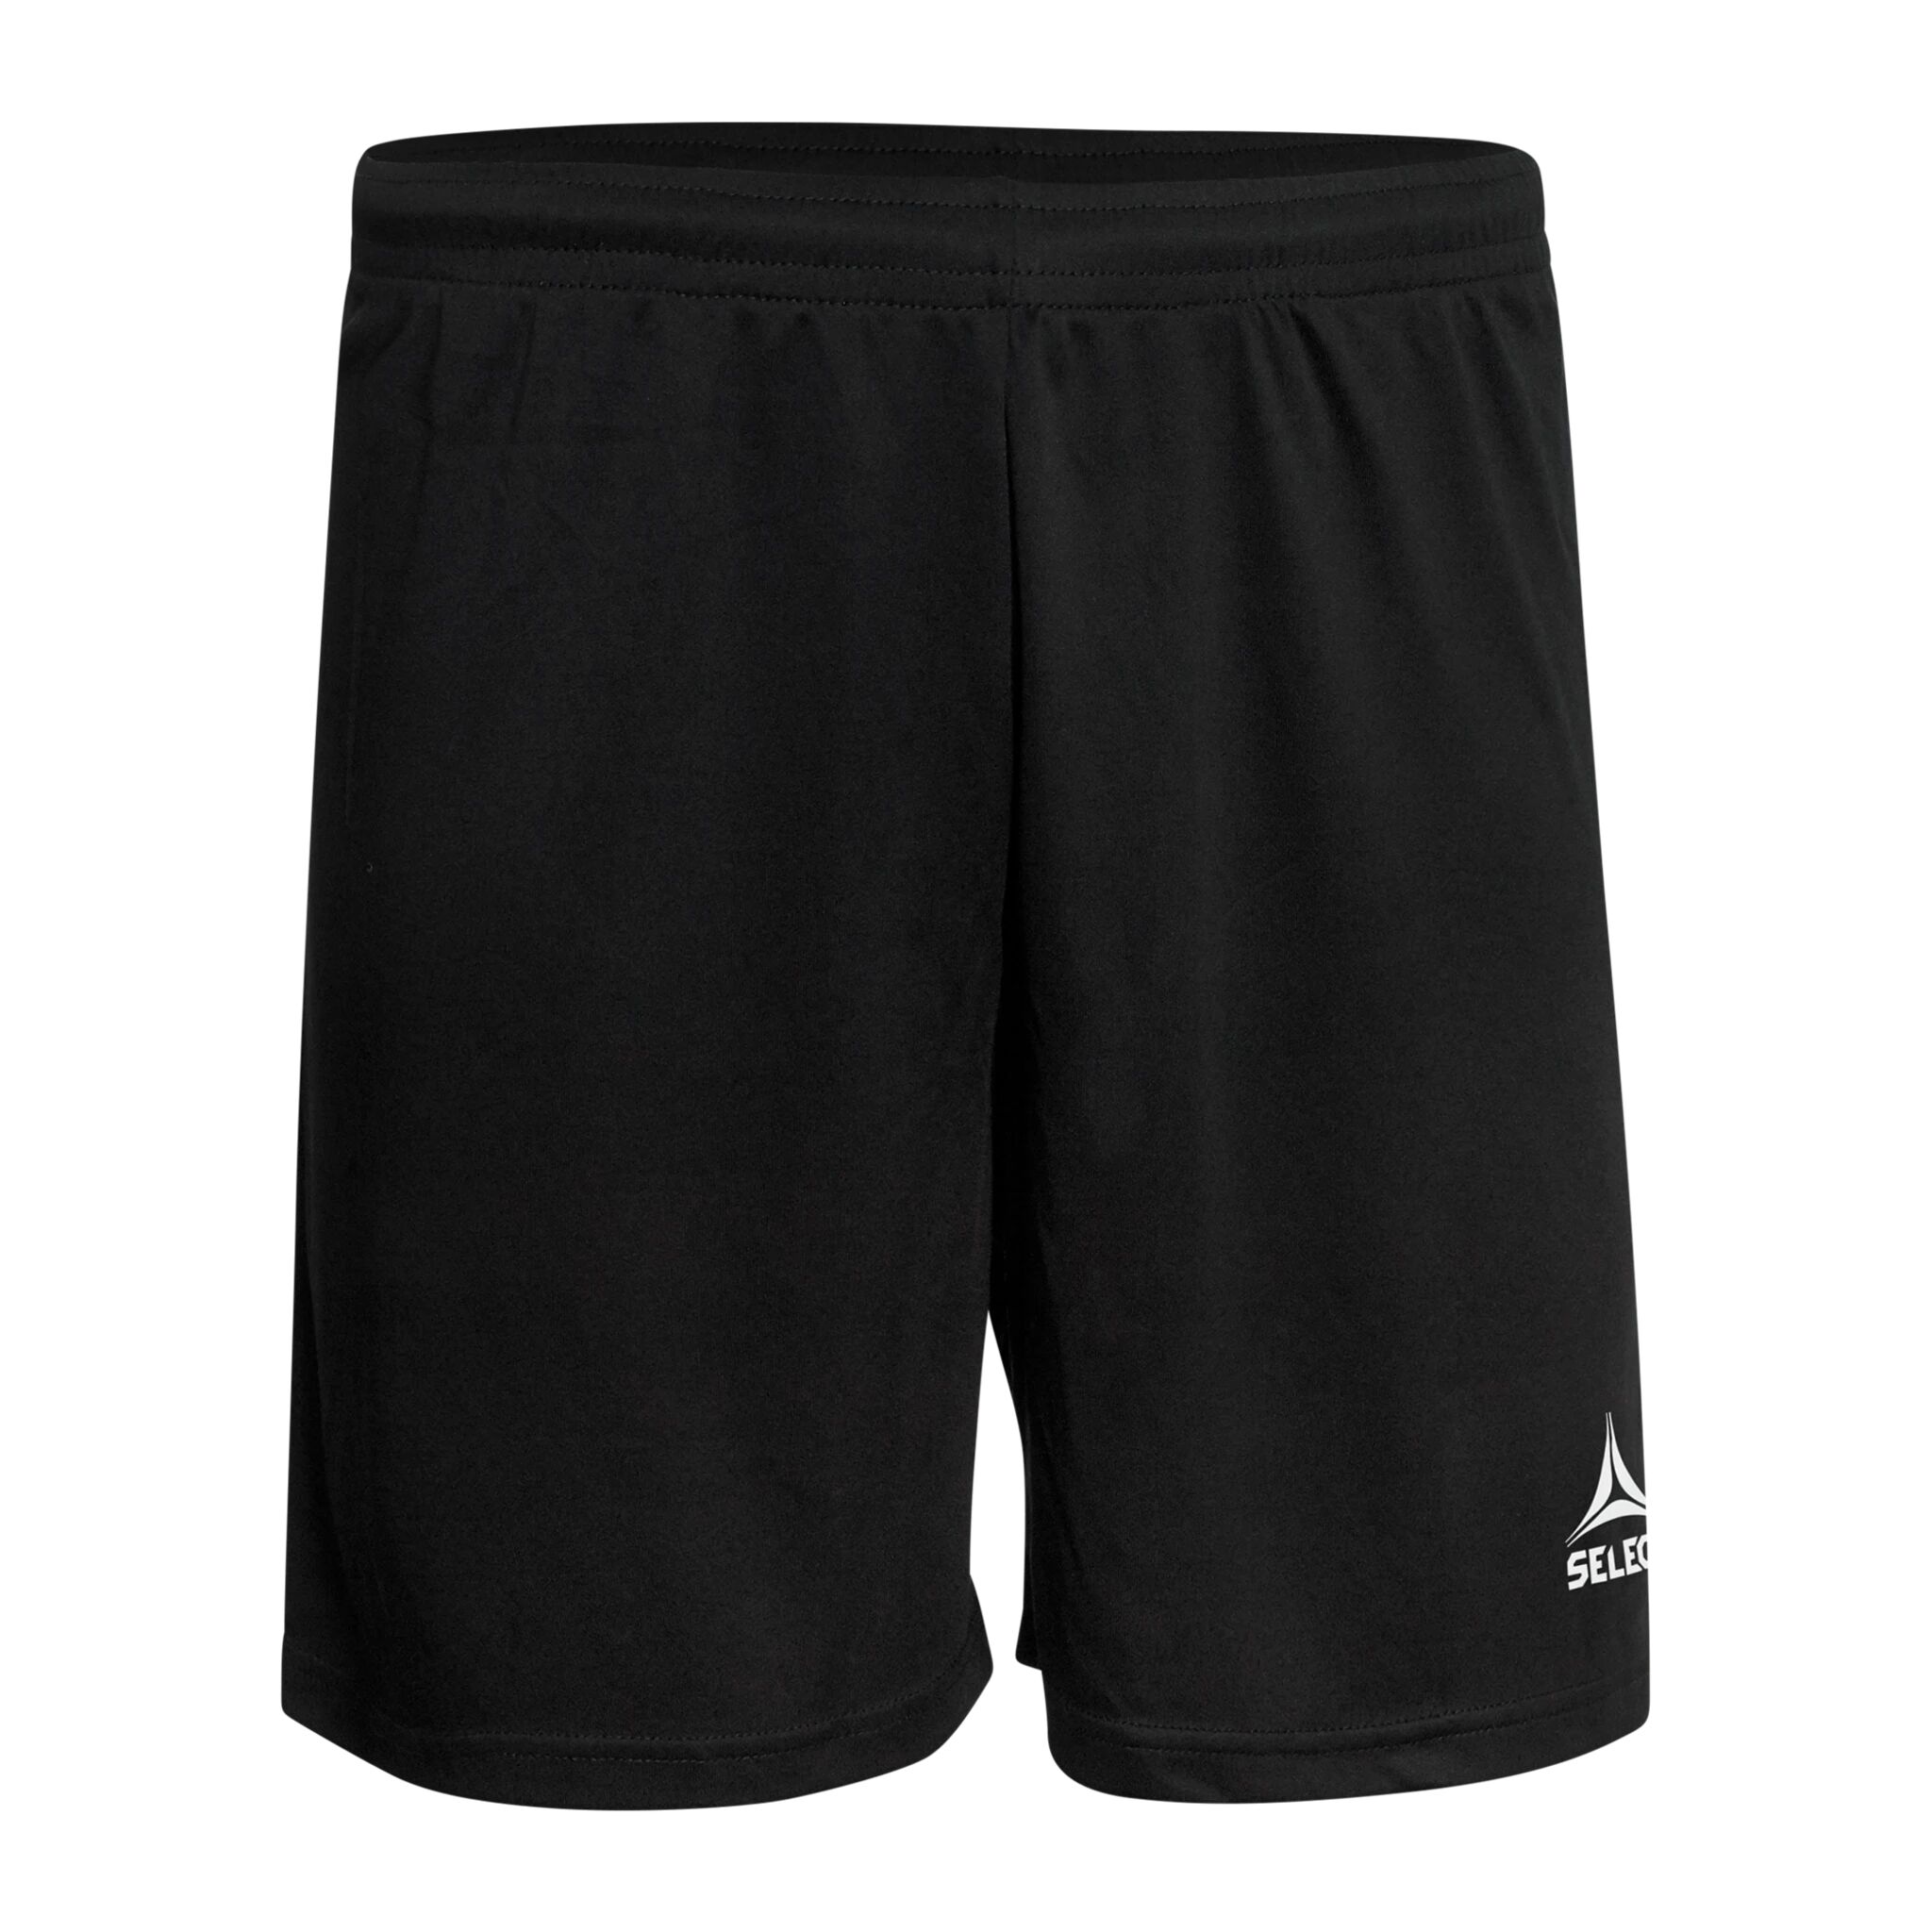 Select Player shorts Pisa, shorts senior L BLACK